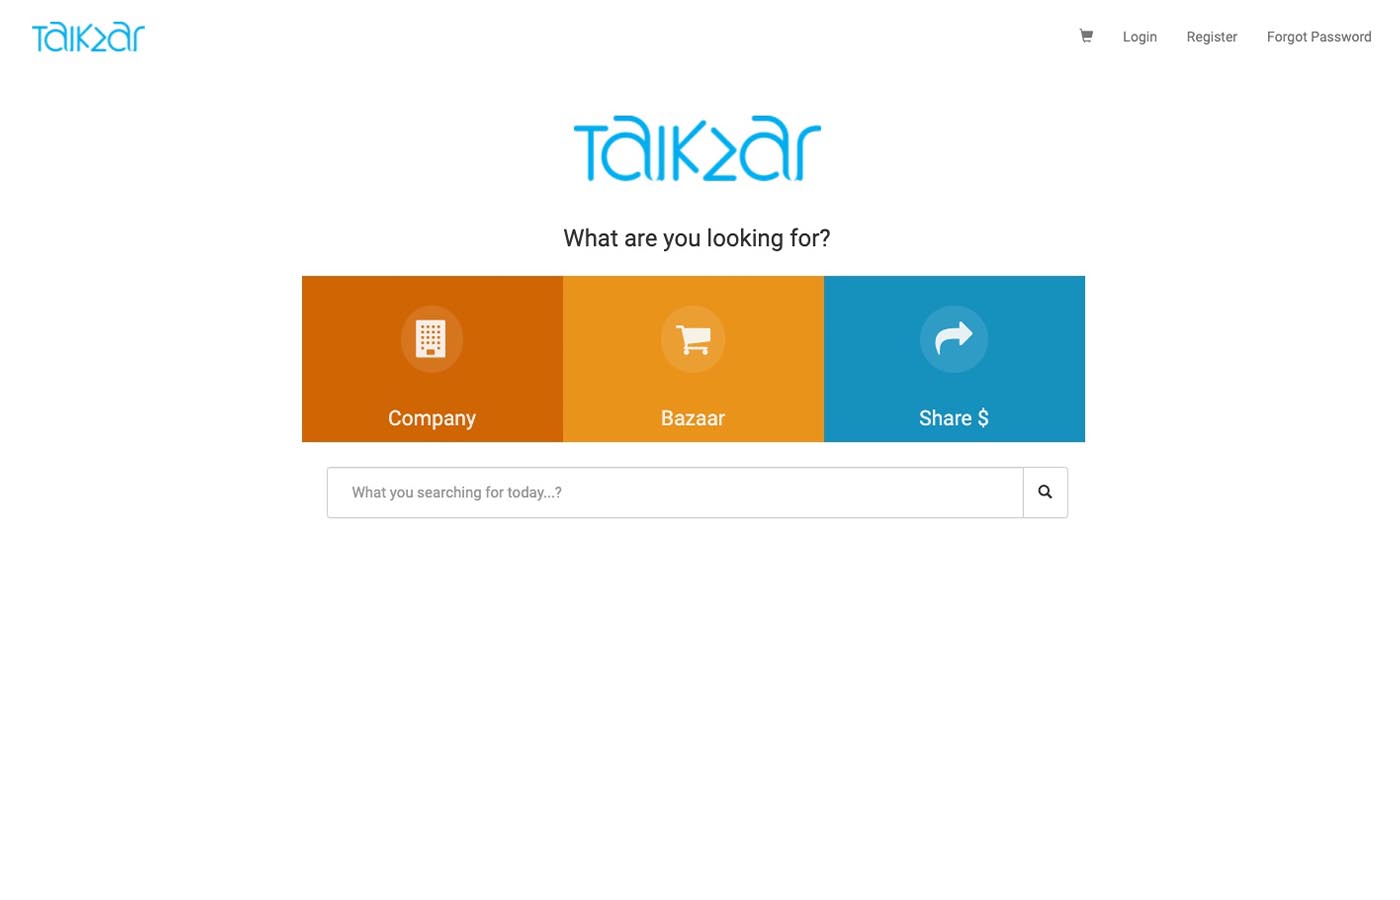 talkzar platform